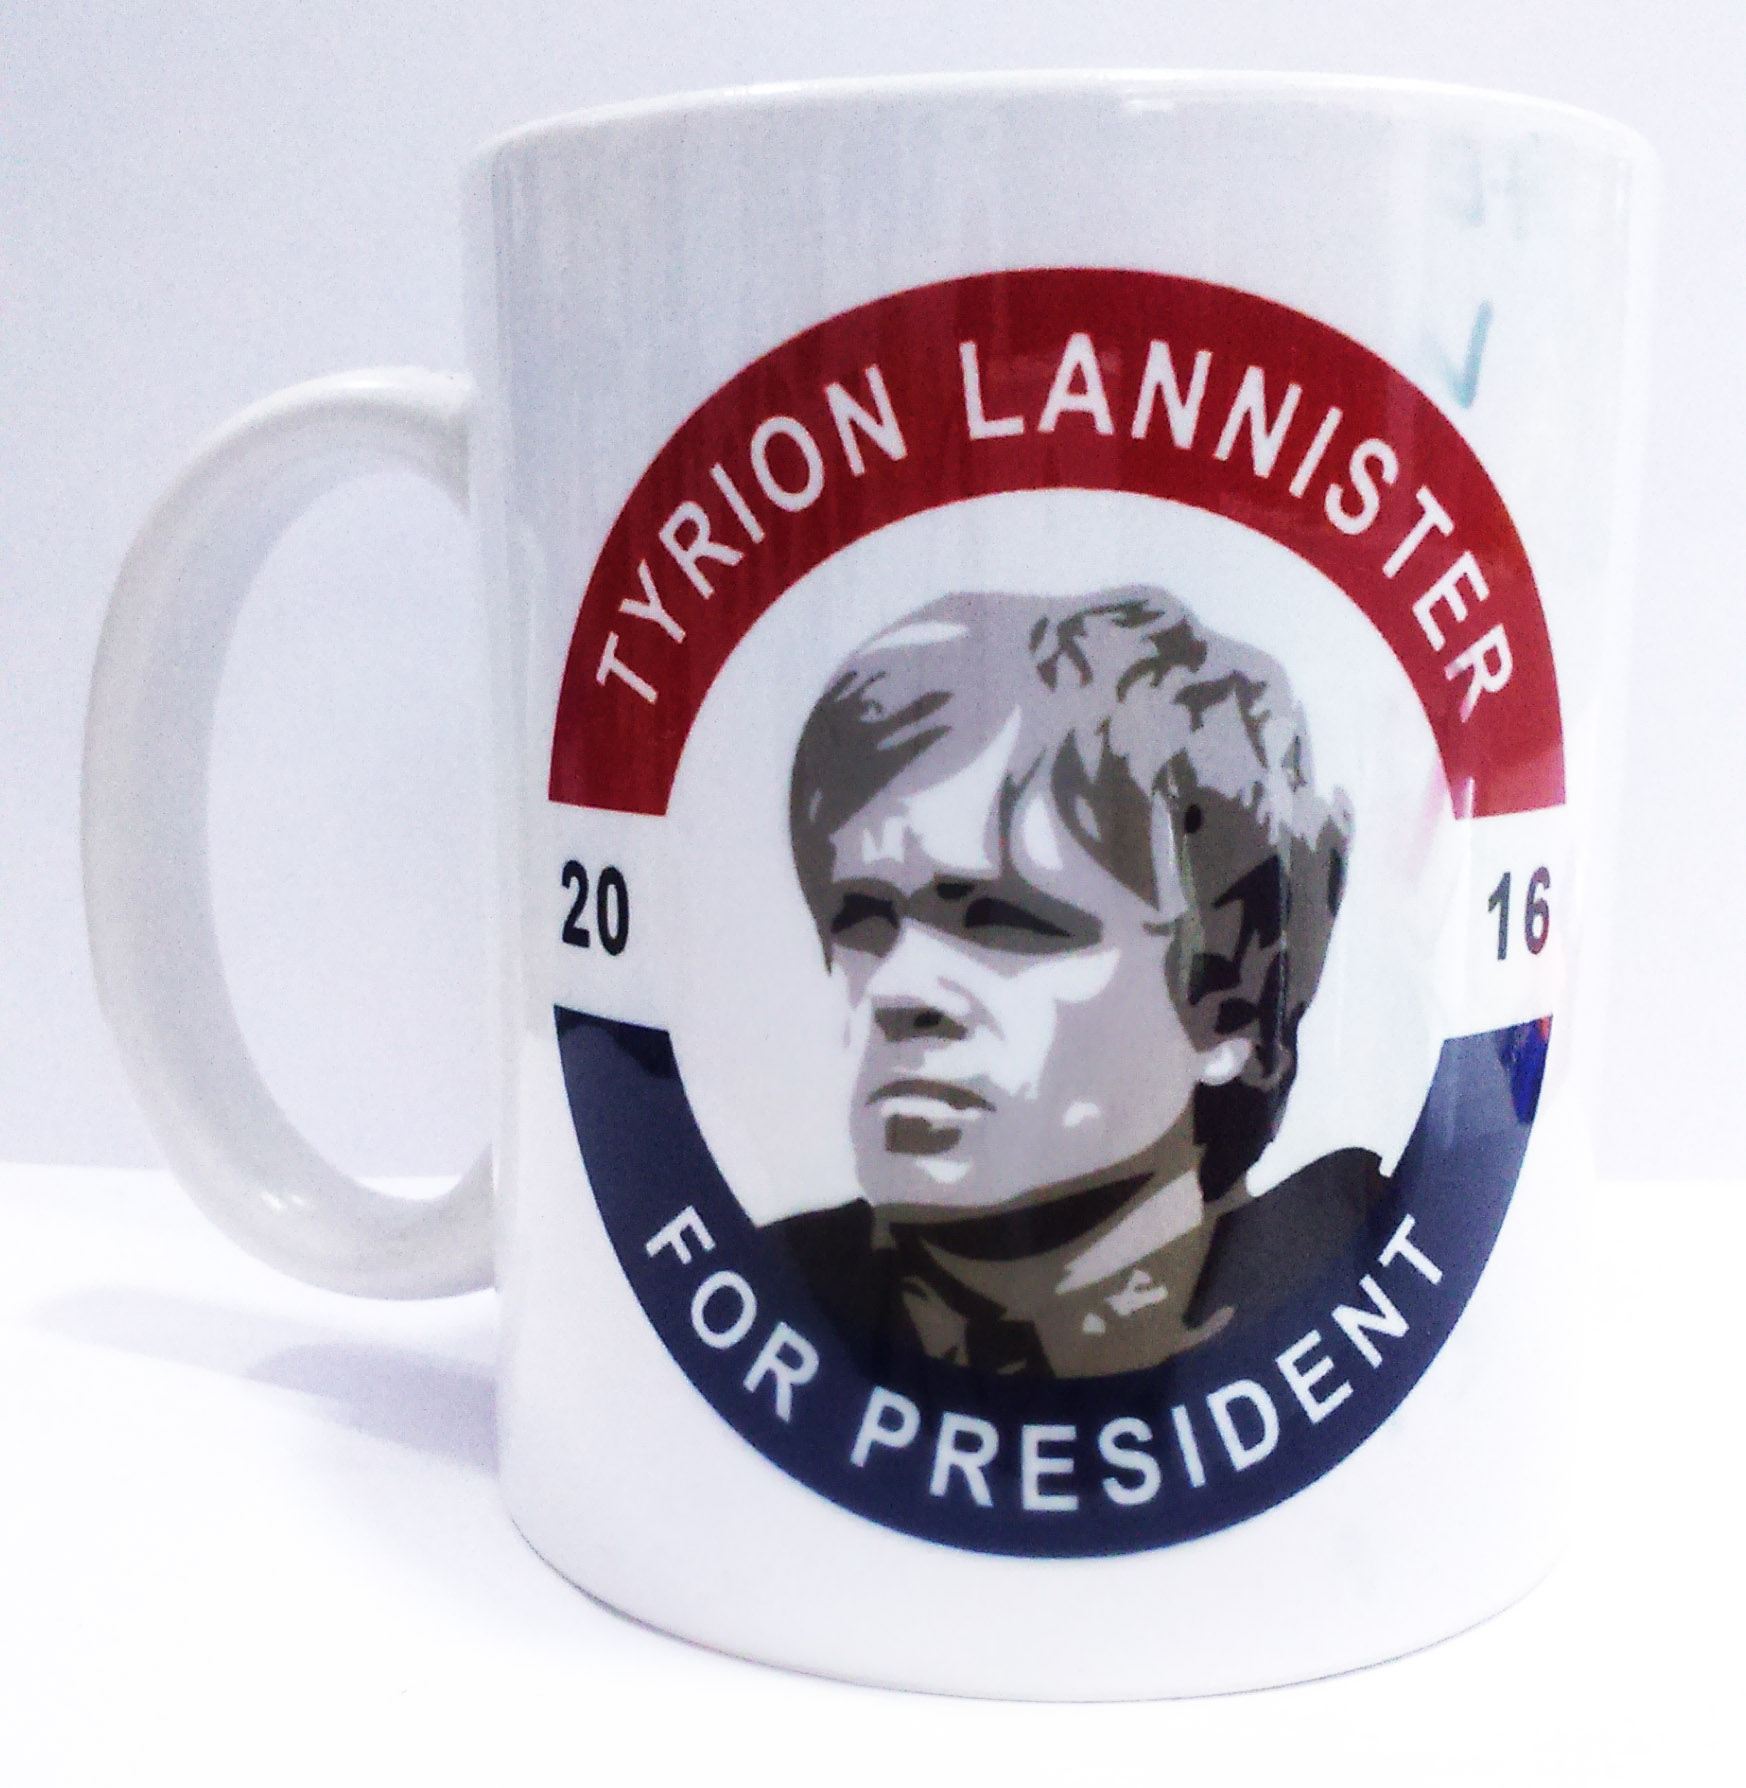 Tyrion Lannister for President